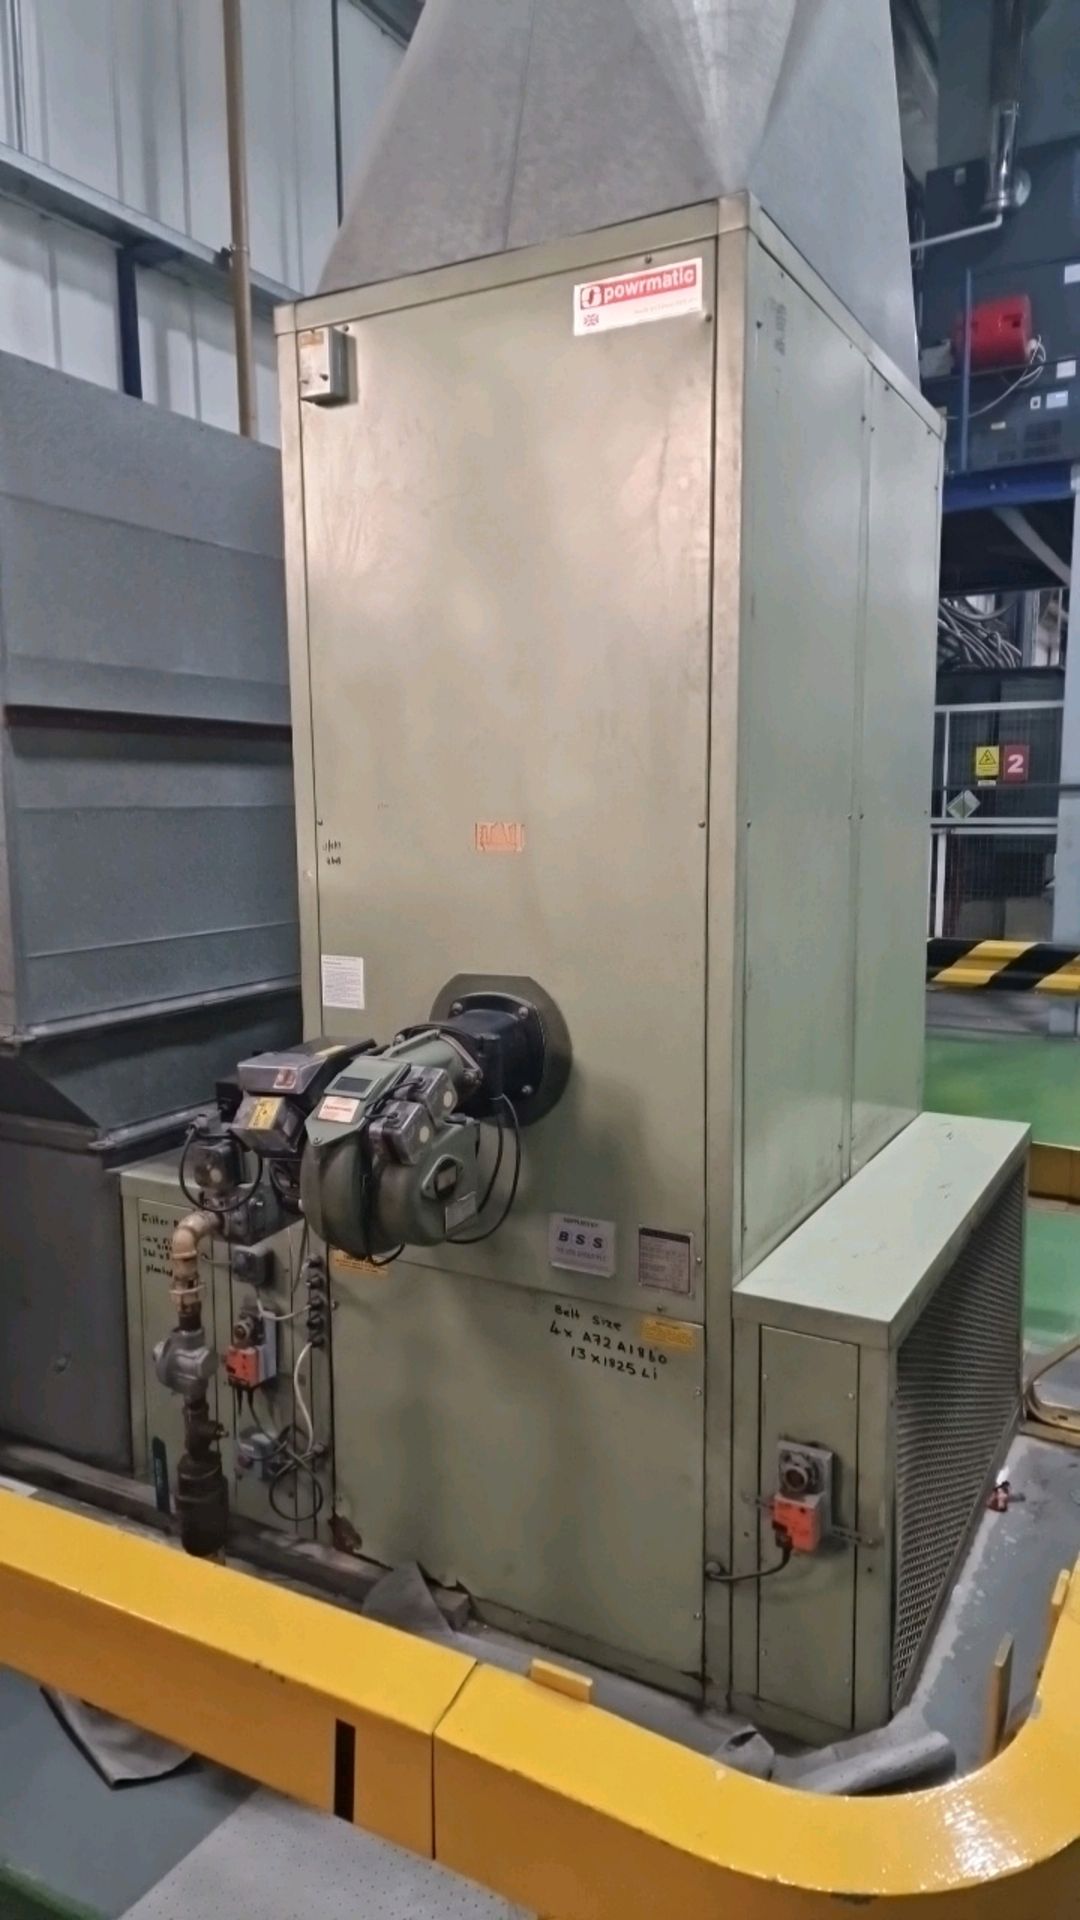 Powrmatic Industrial Heating Unit - Bild 2 aus 10